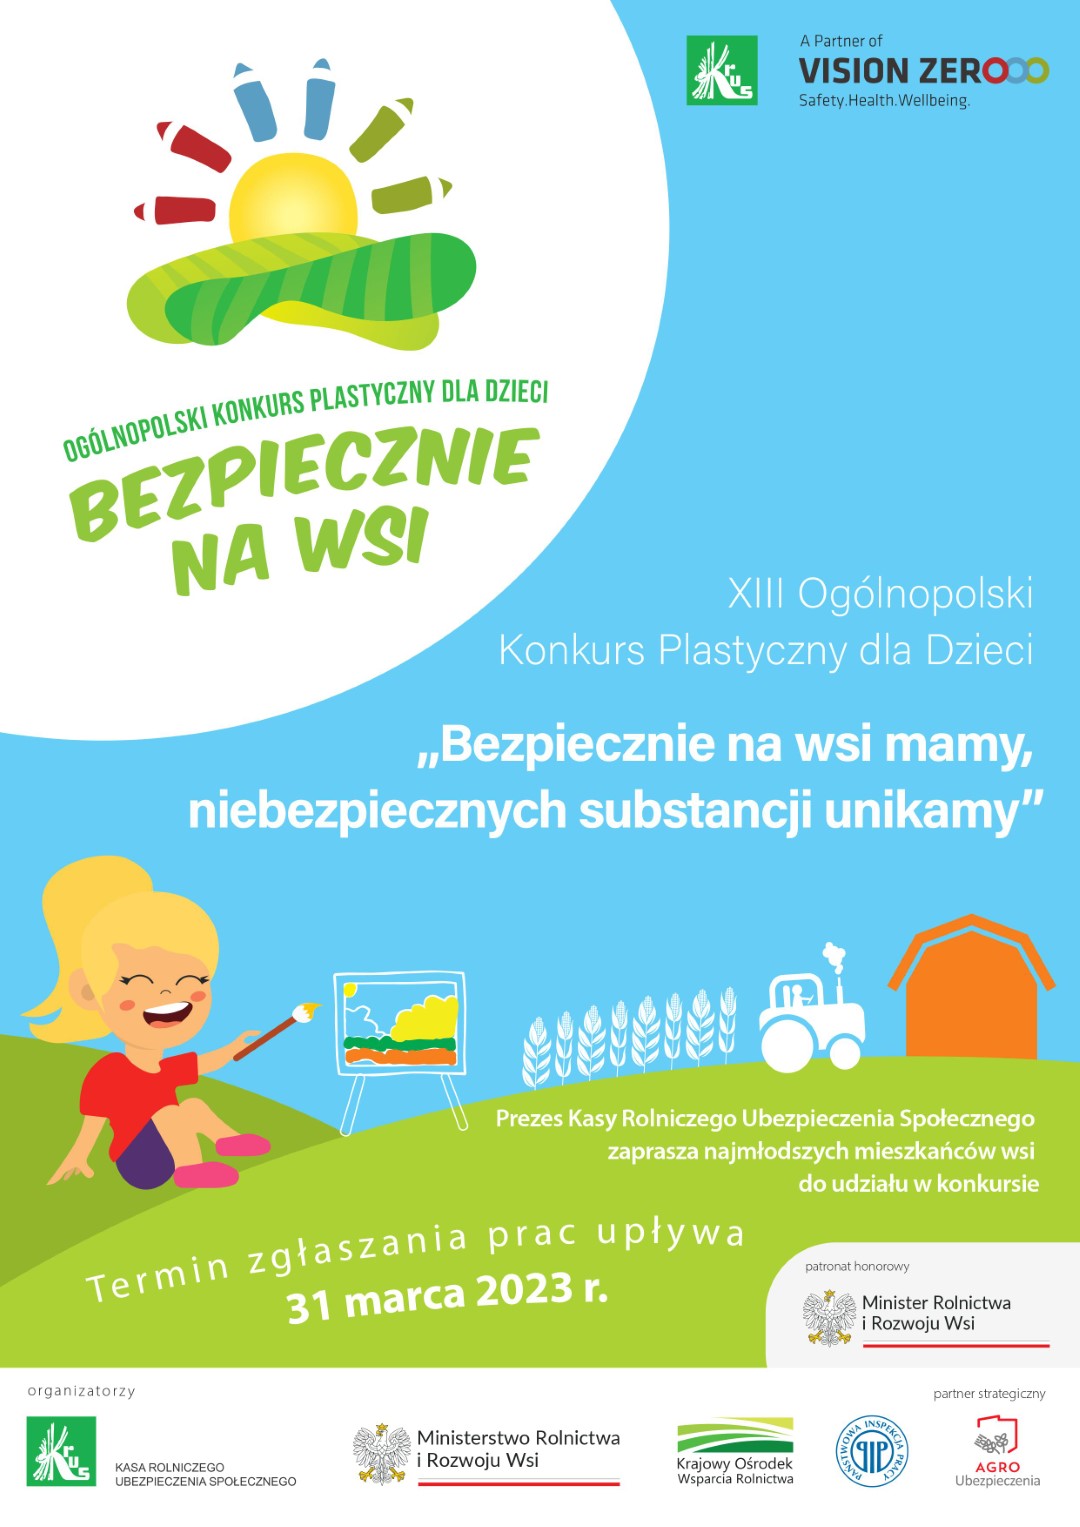 Oglnopolski konkurs plastyczny dla dzieci - BEZPIECZNIE NA WSI